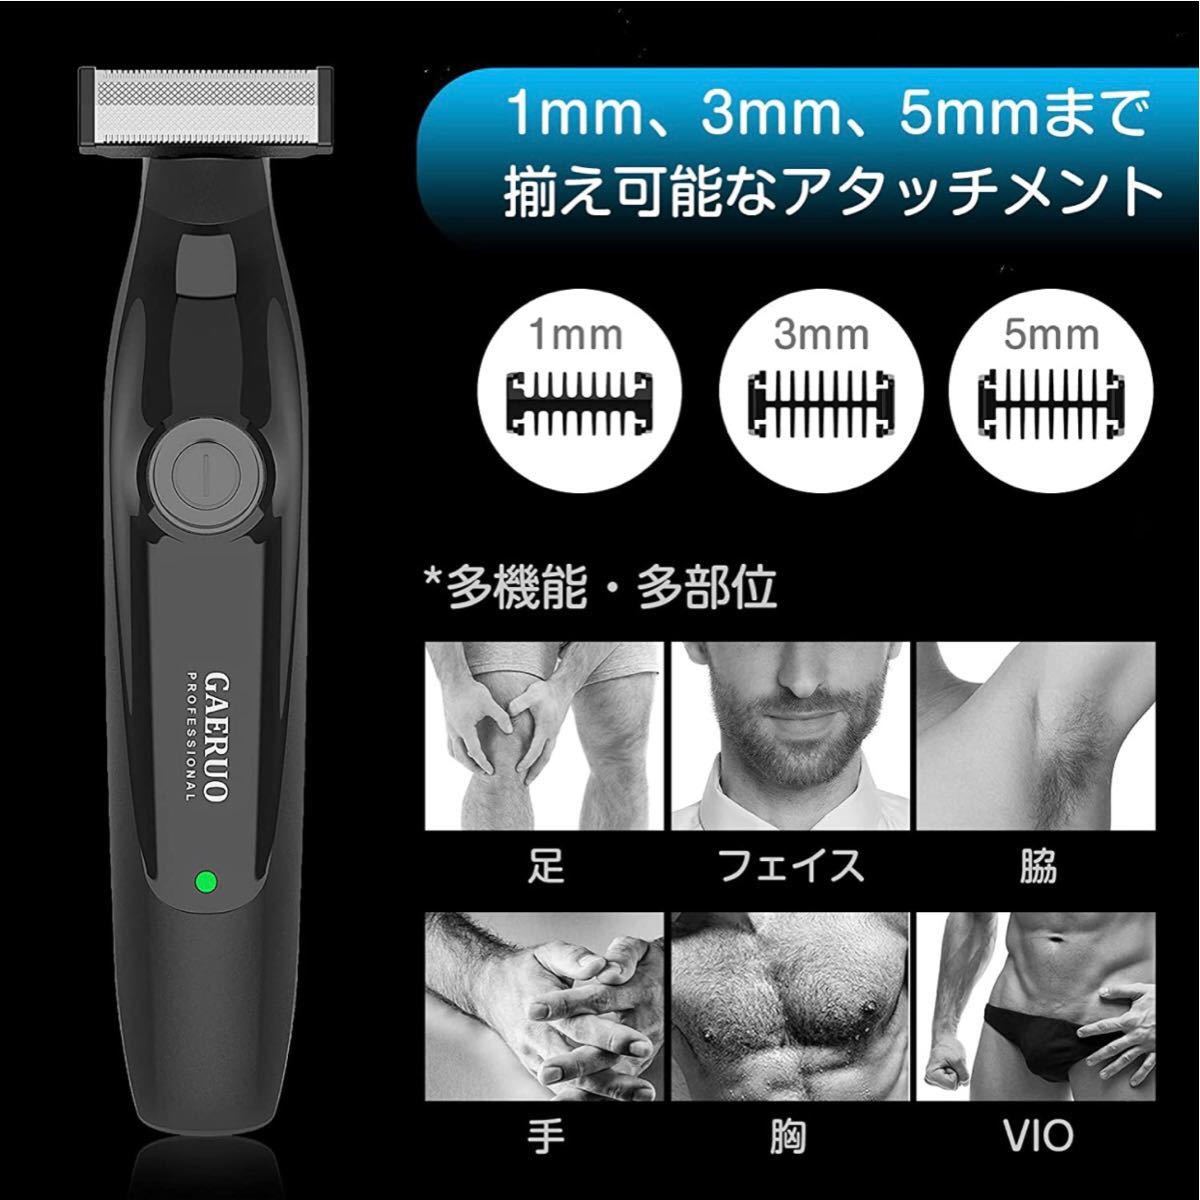 【送料無料】ボディシェーバー 電動 メンズシェーバー 毛剃り 15°角度調整 ネット刃付き IPX7防水